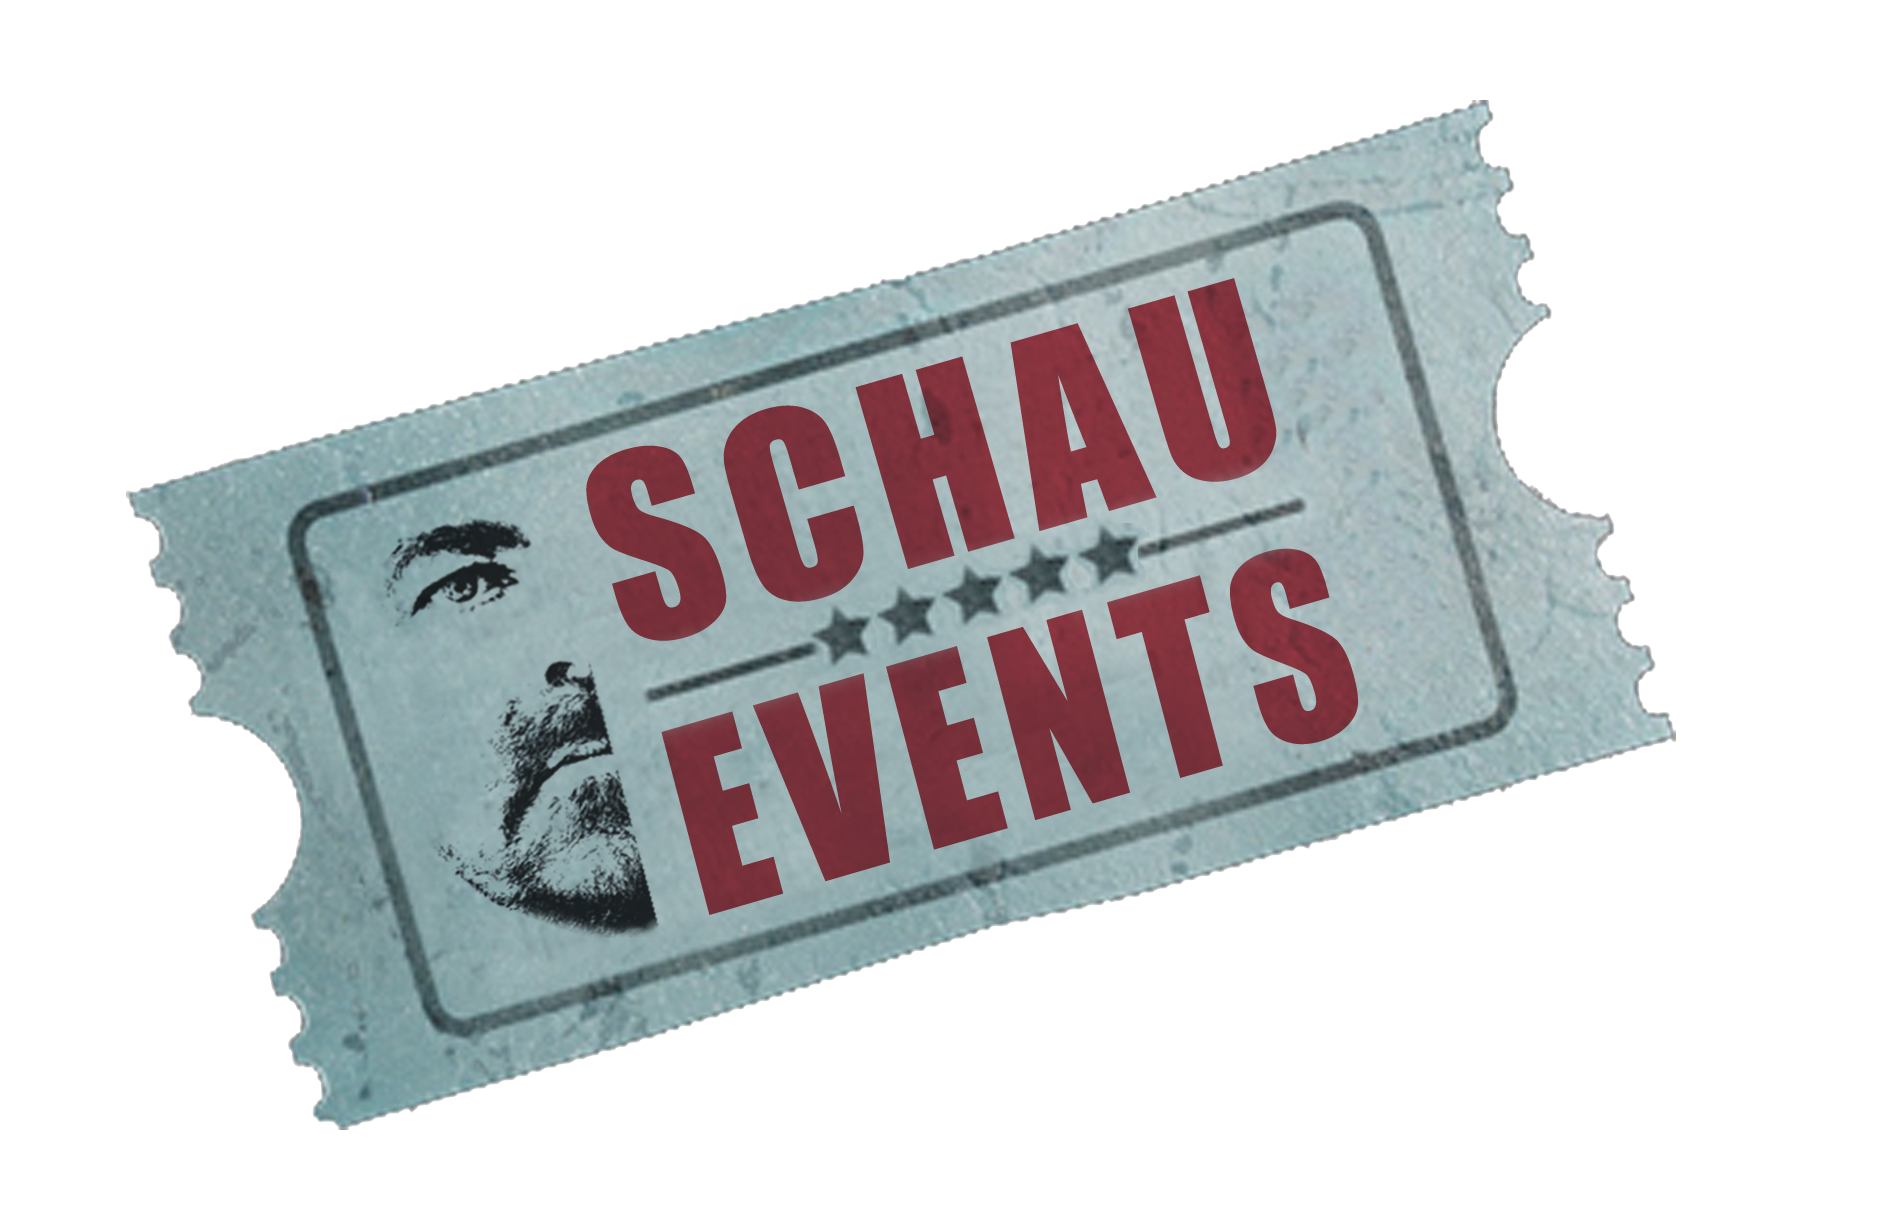 Die Schau-Events GmbH ist auf verschiedene Bereiche des Event-Managements spezialisiert. von privat